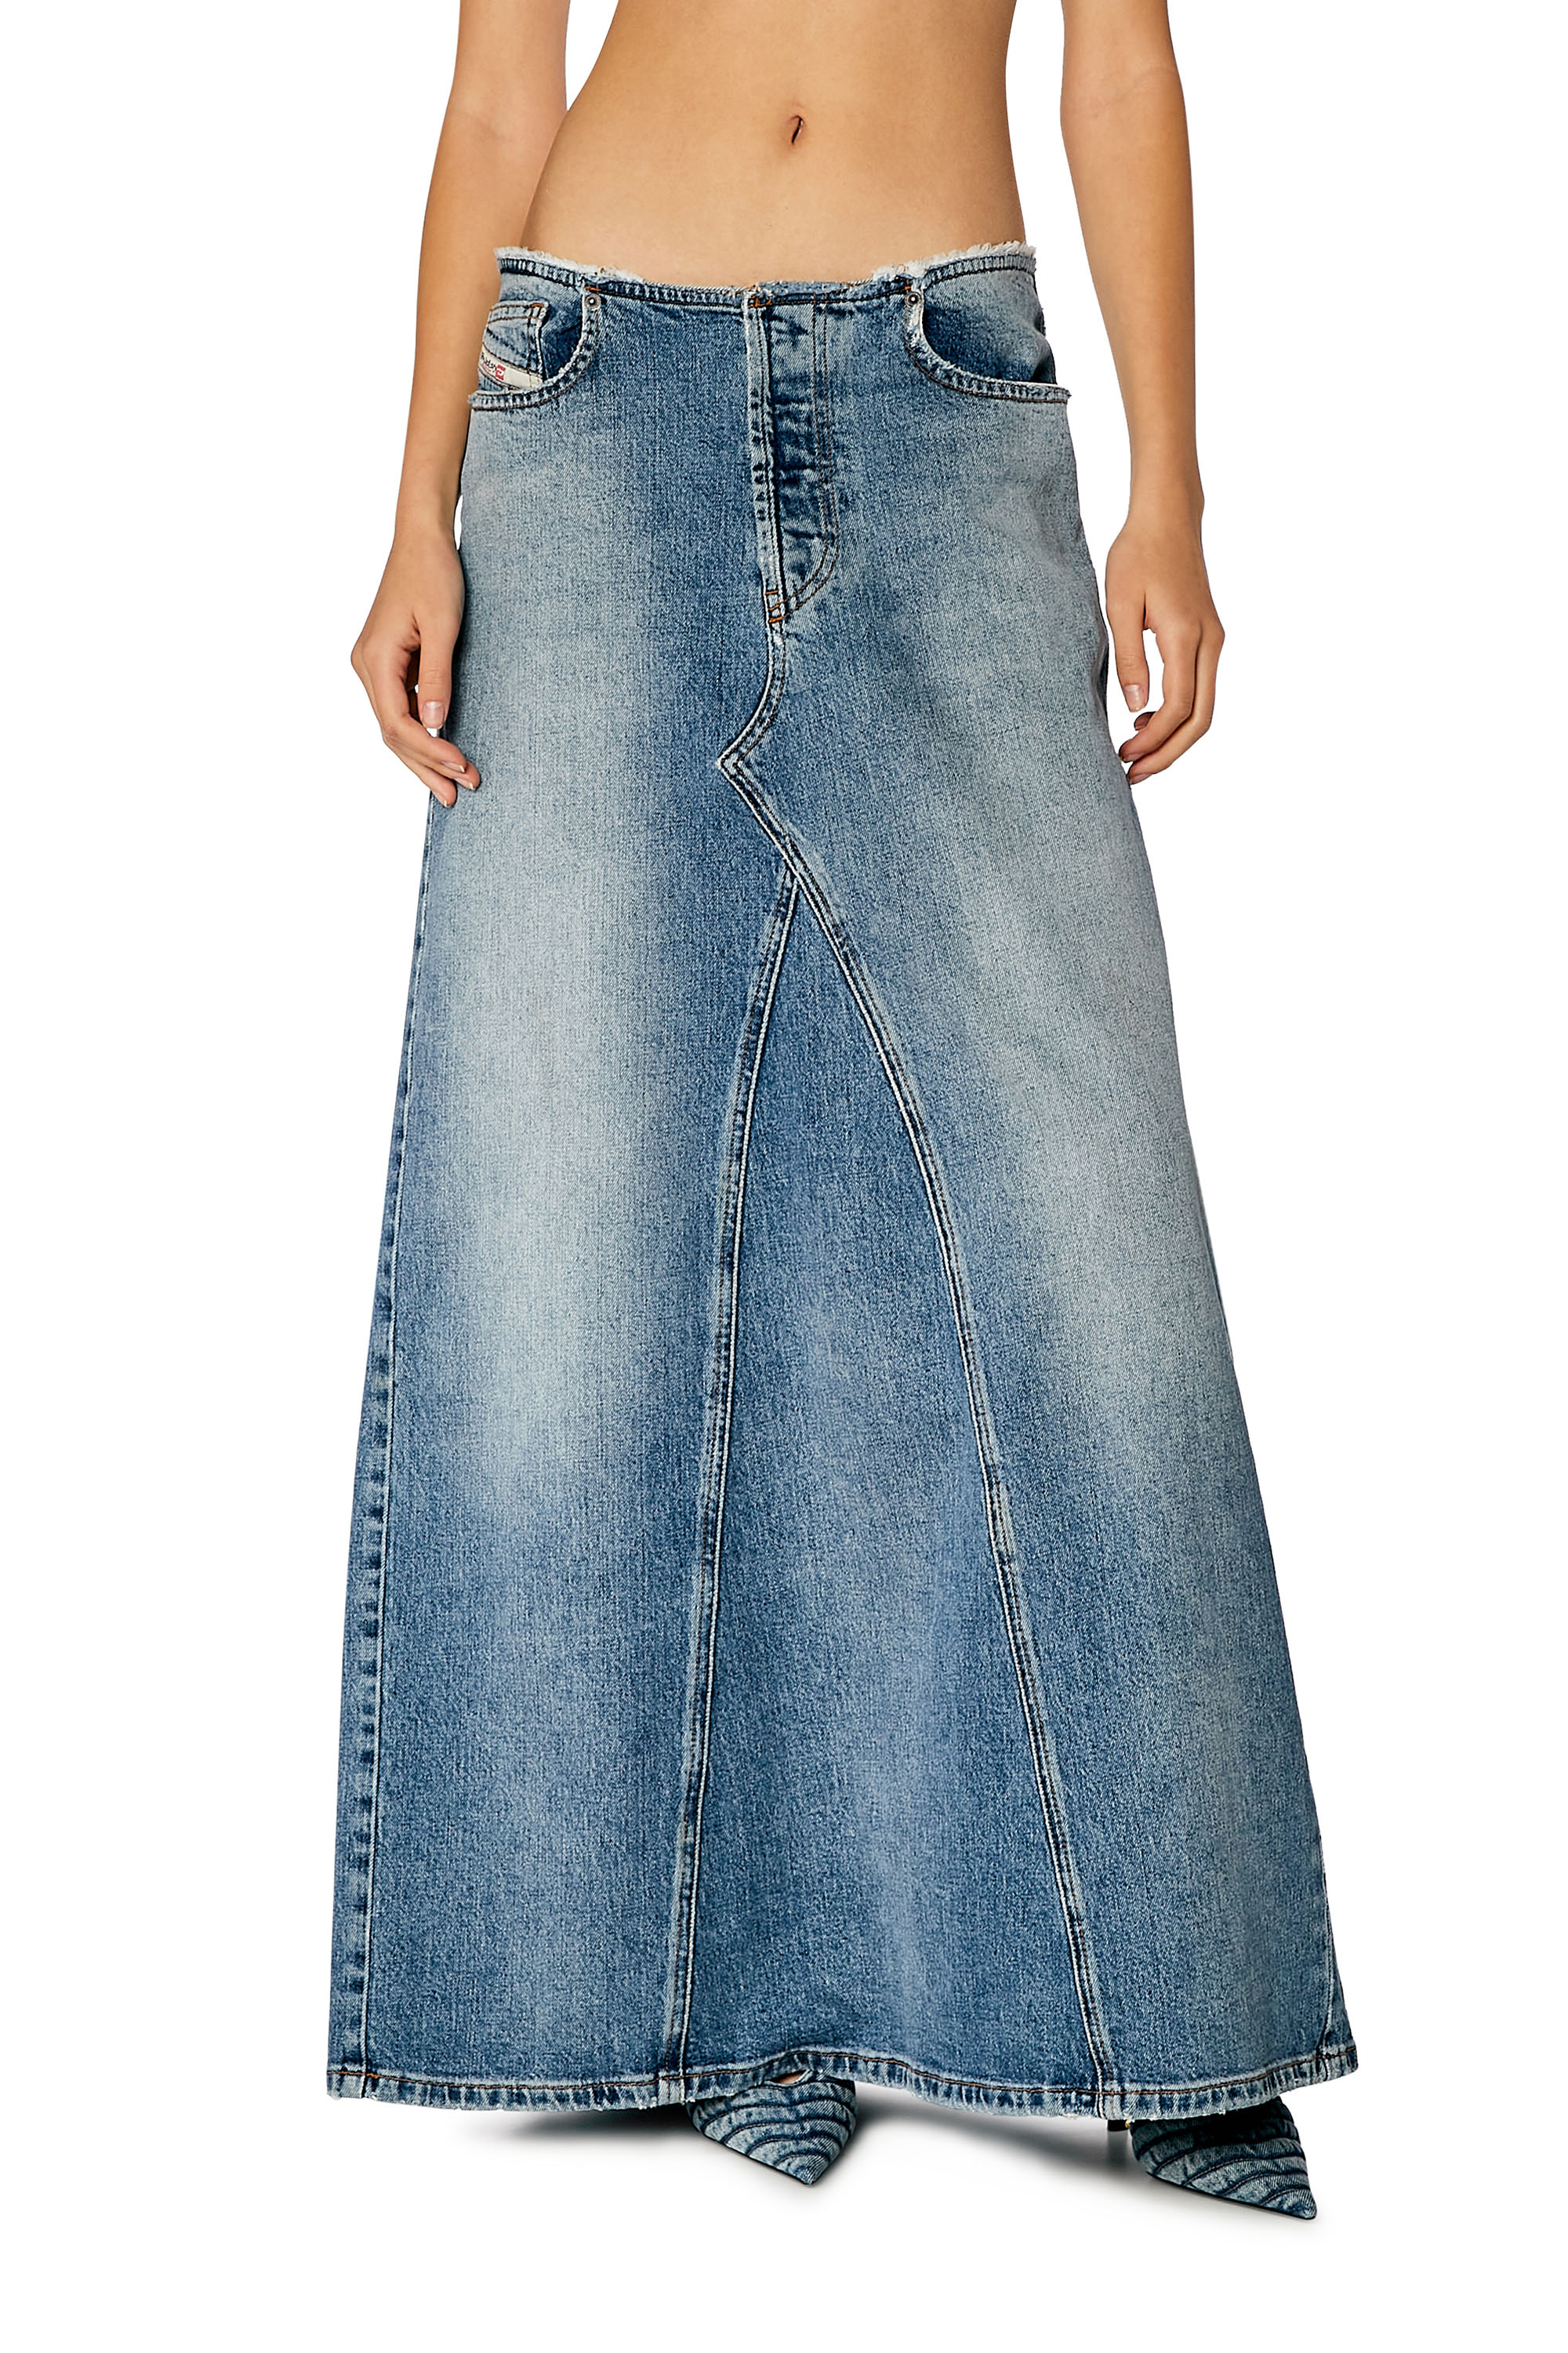 Black Cargo Pocket Split Denim Skirt, High Rise Solid Color A-line Long  Denim Skirt, Women's Denim Jeans & Clothing